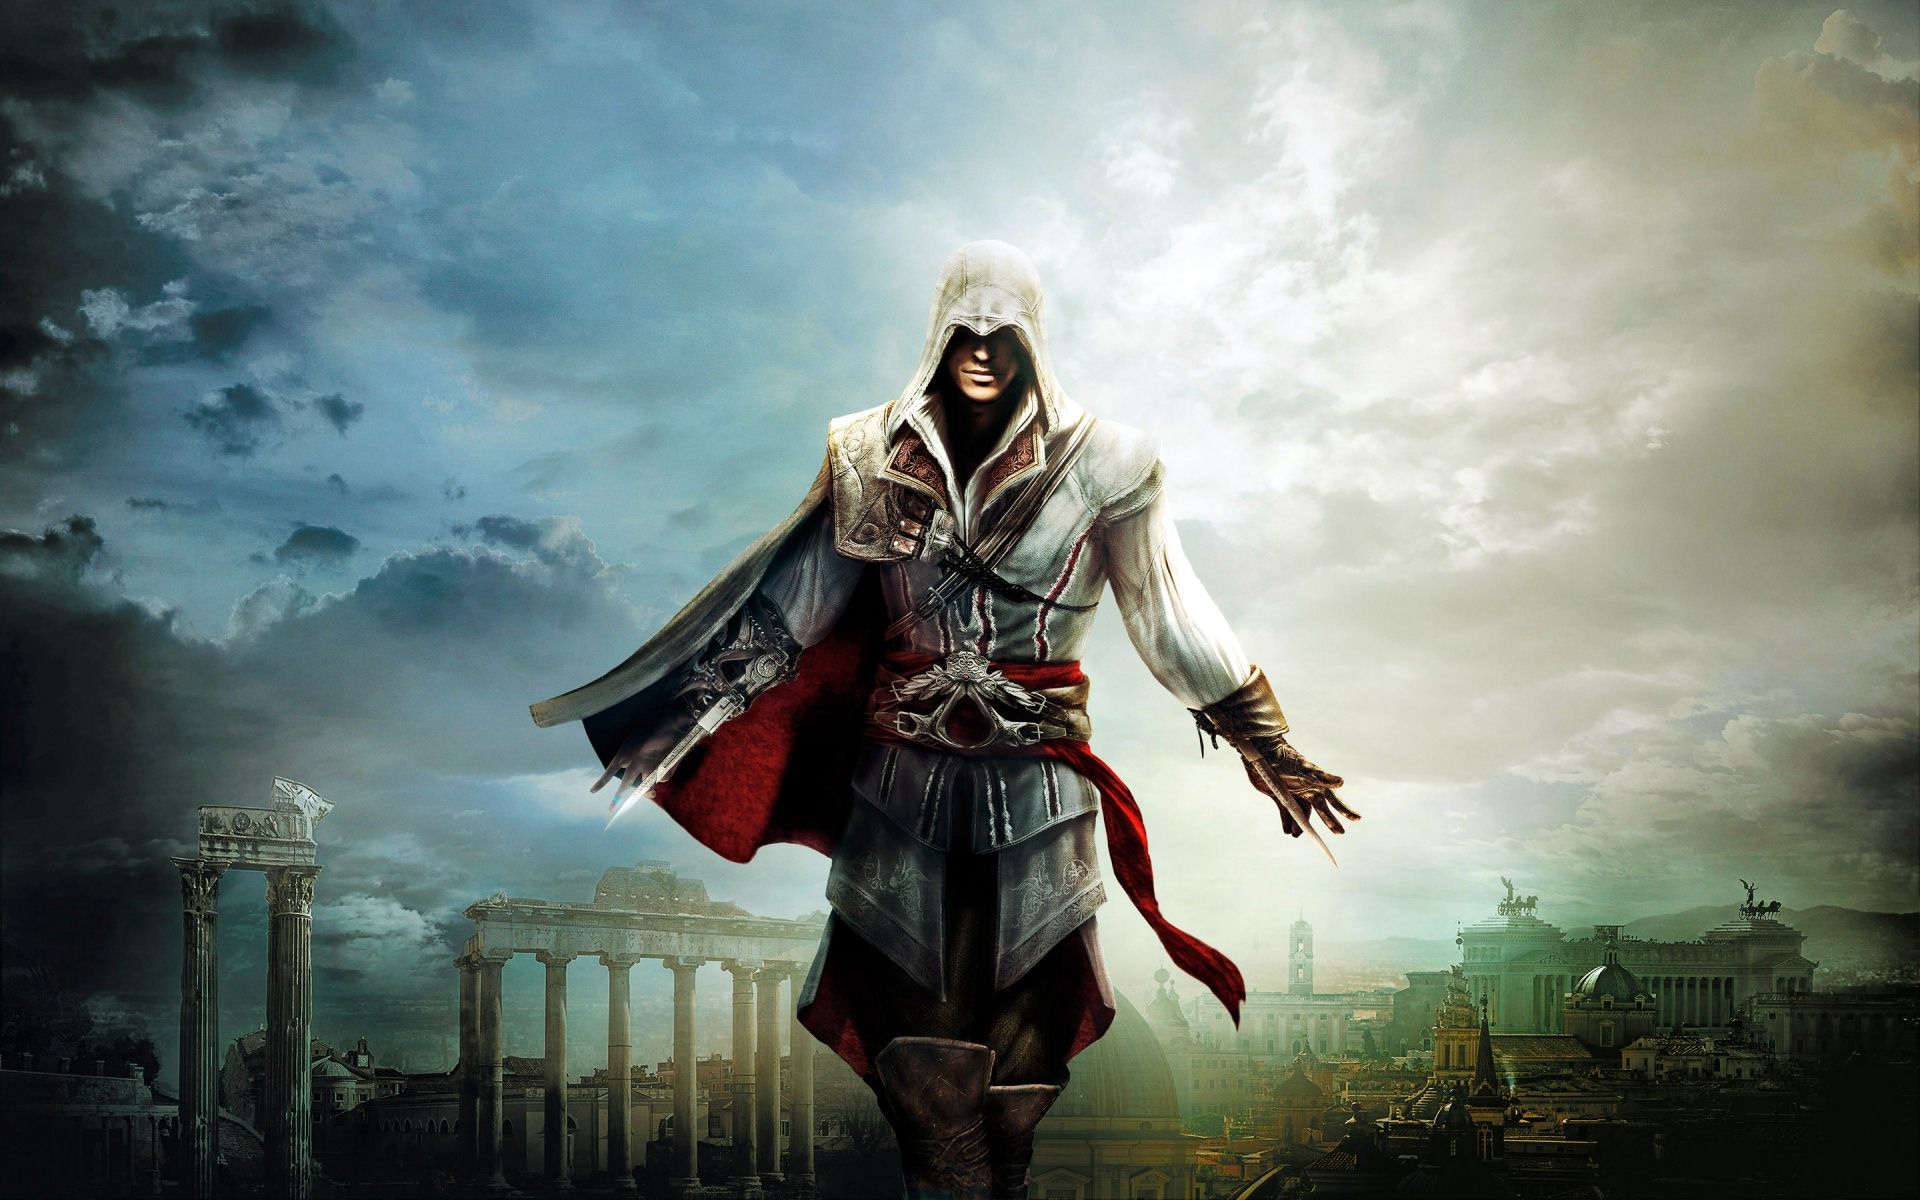 A still from Assassin's Creed